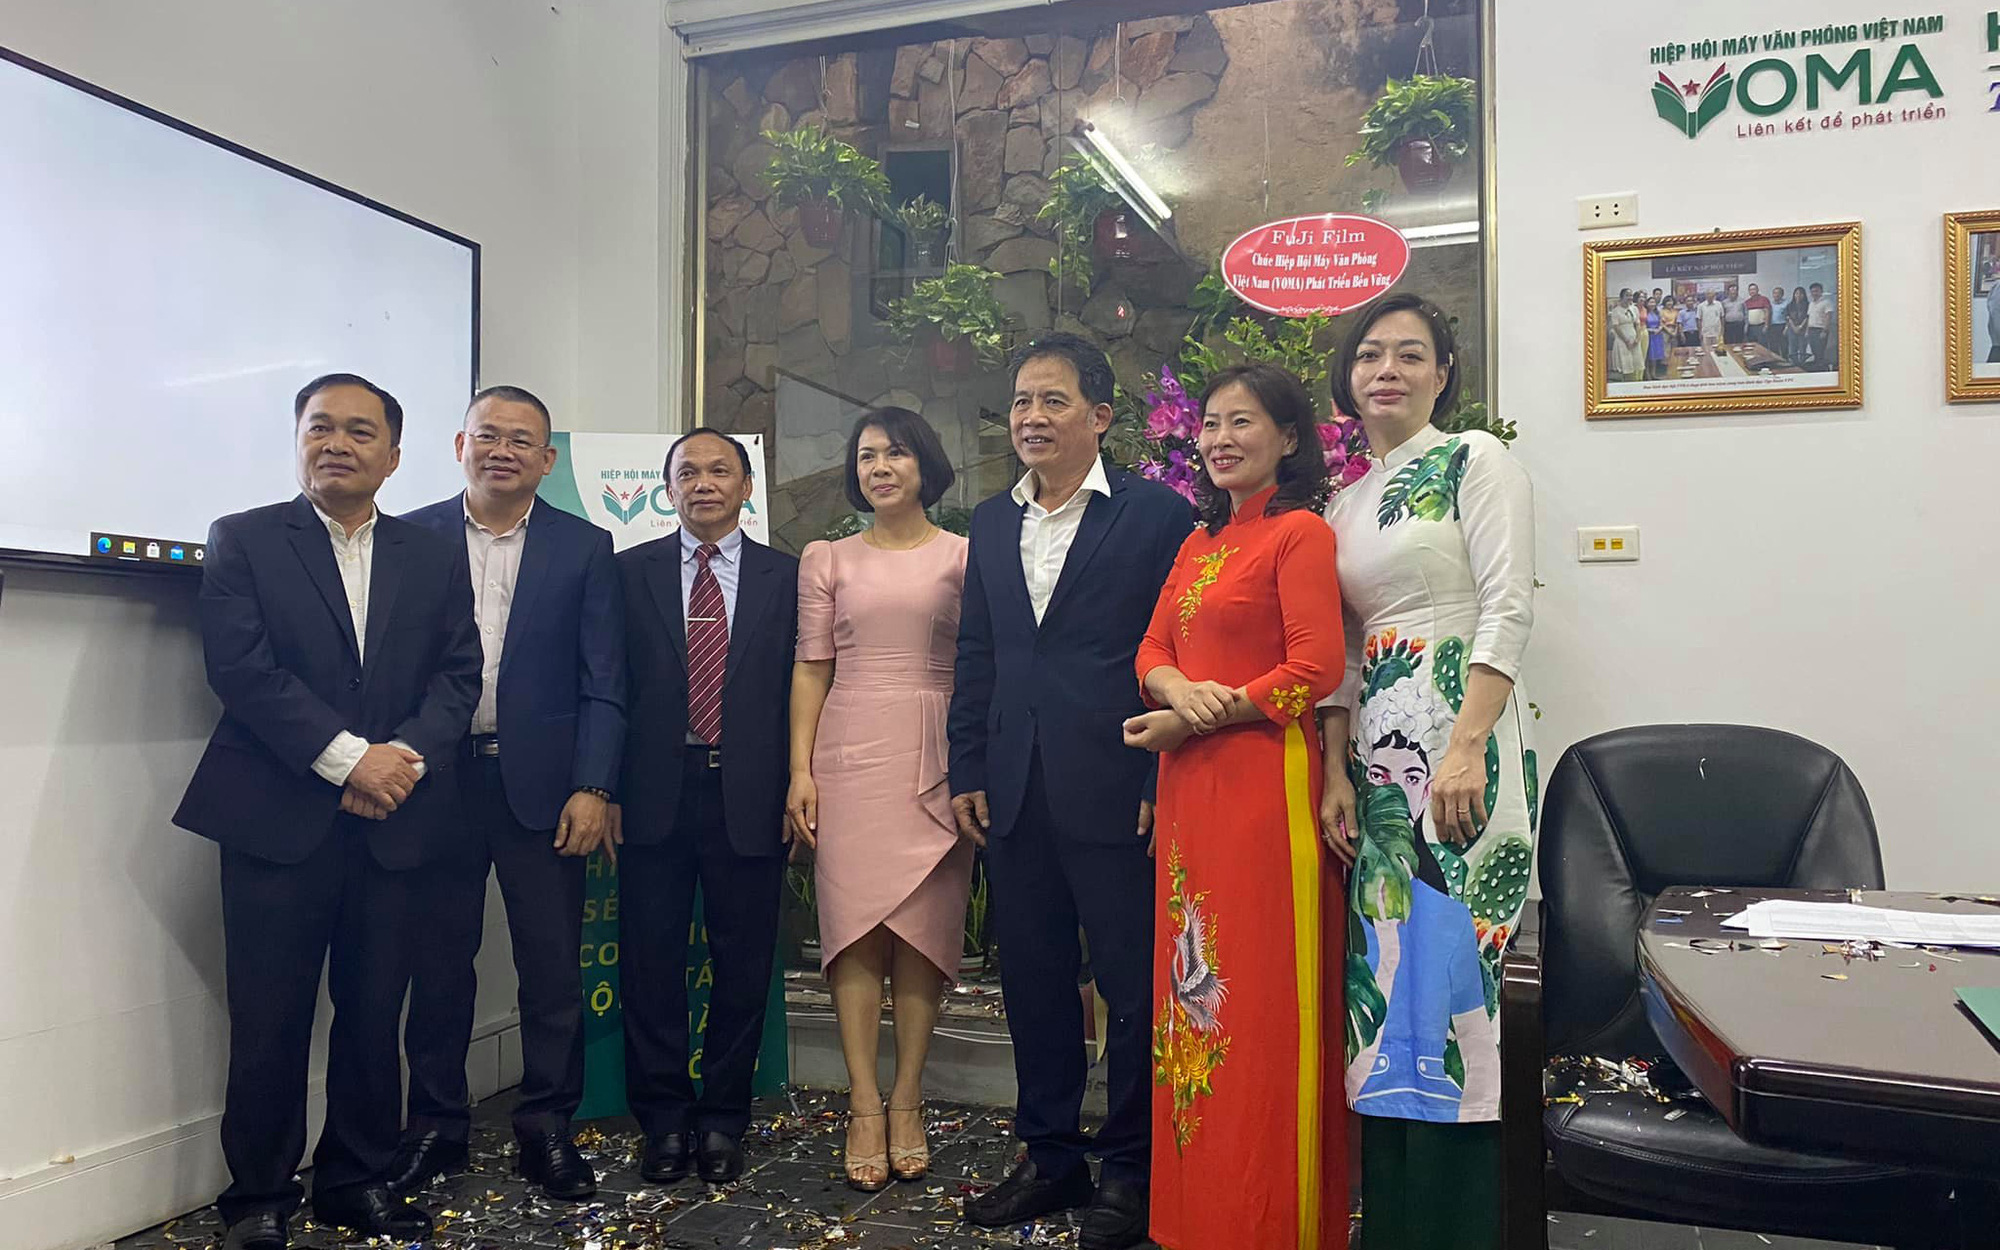 Hiệp hội Máy văn phòng Việt Nam tổ chức thành công Hội nghị trực tuyến